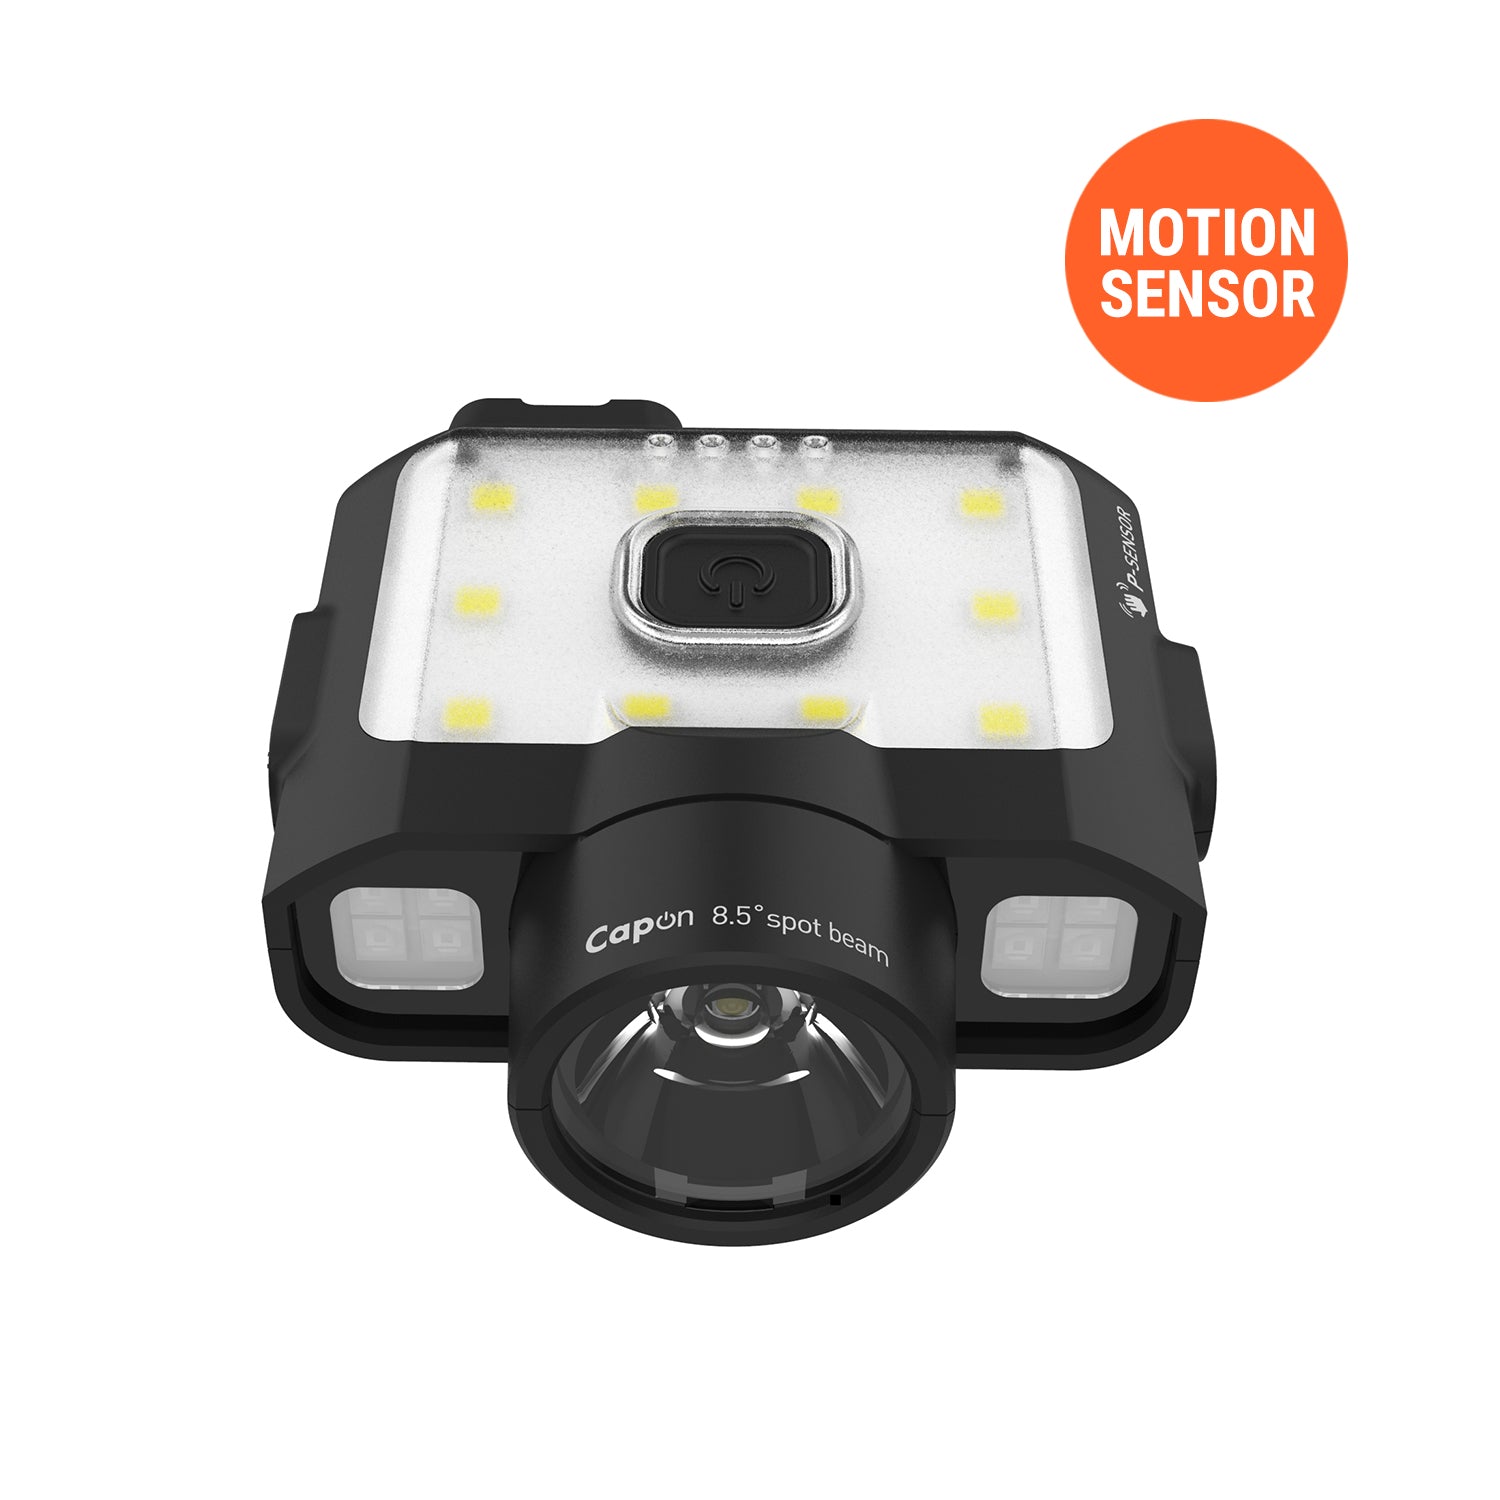 Cap Light / caplight / Head Light / Headlight / Capon / Canada Light / Motion Sensor / Motion sensor light /CLAYMORE CAPON 120D / RECHARGEABLE CAP LIGHT / CAPON120D